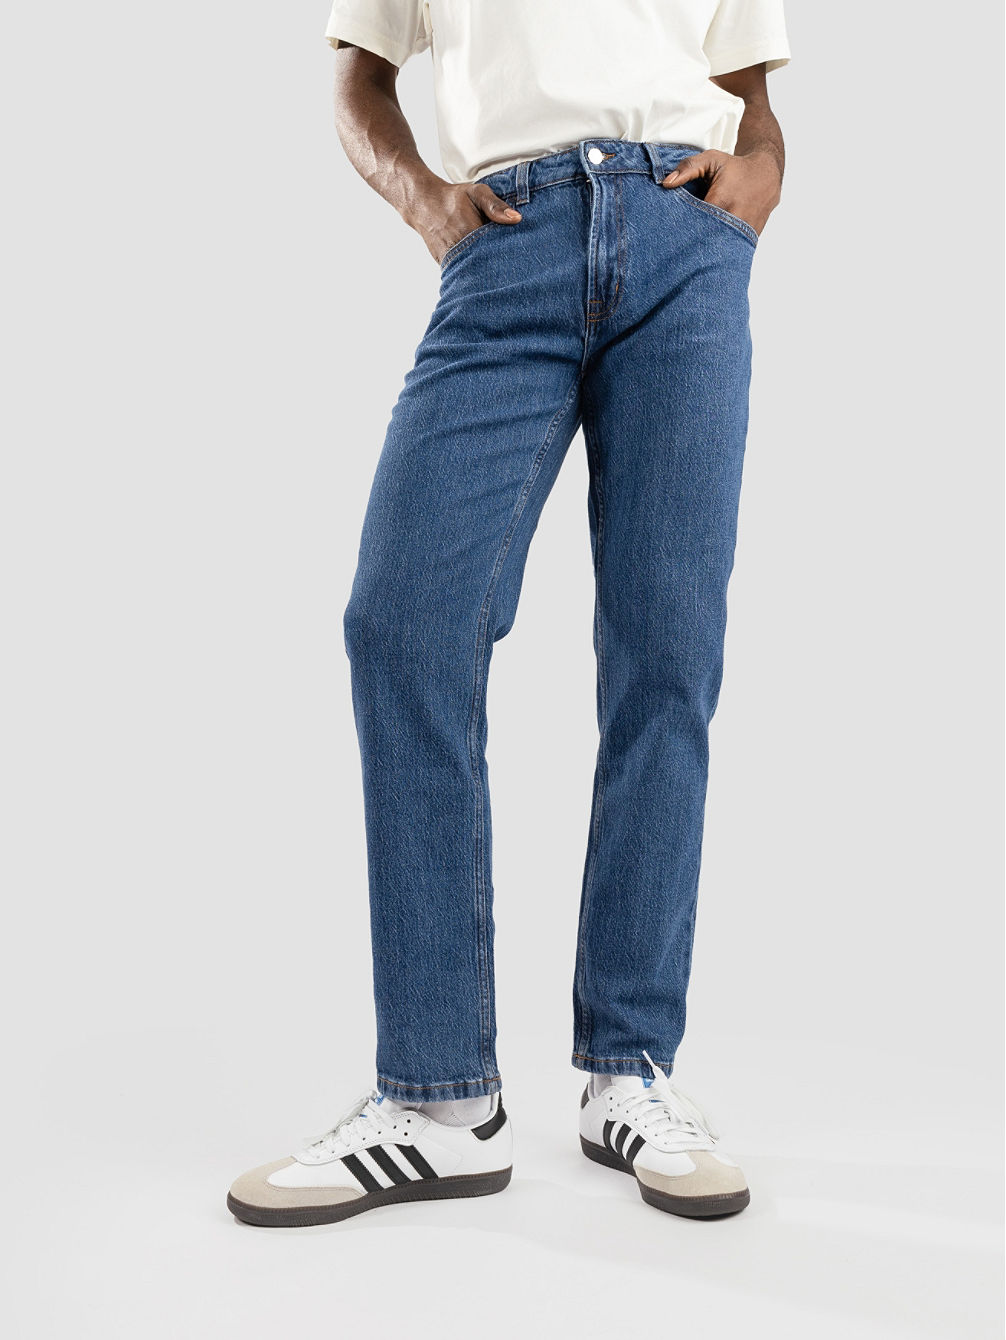 Boston Jeans